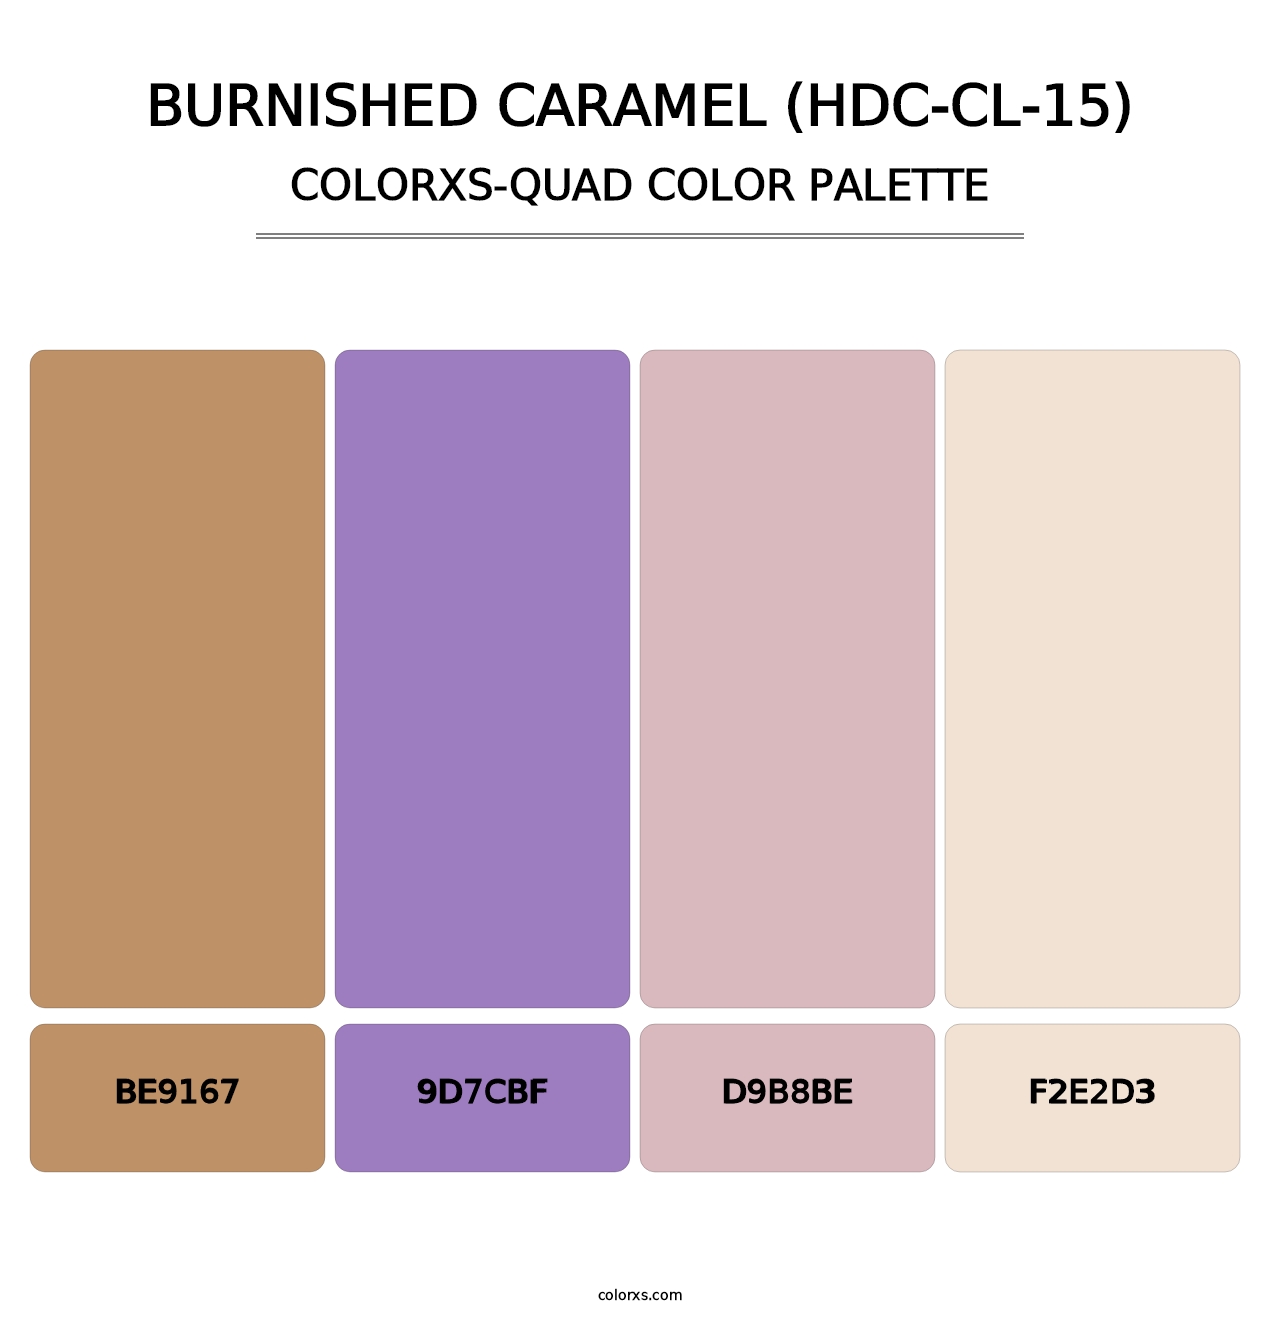 Burnished Caramel (HDC-CL-15) - Colorxs Quad Palette